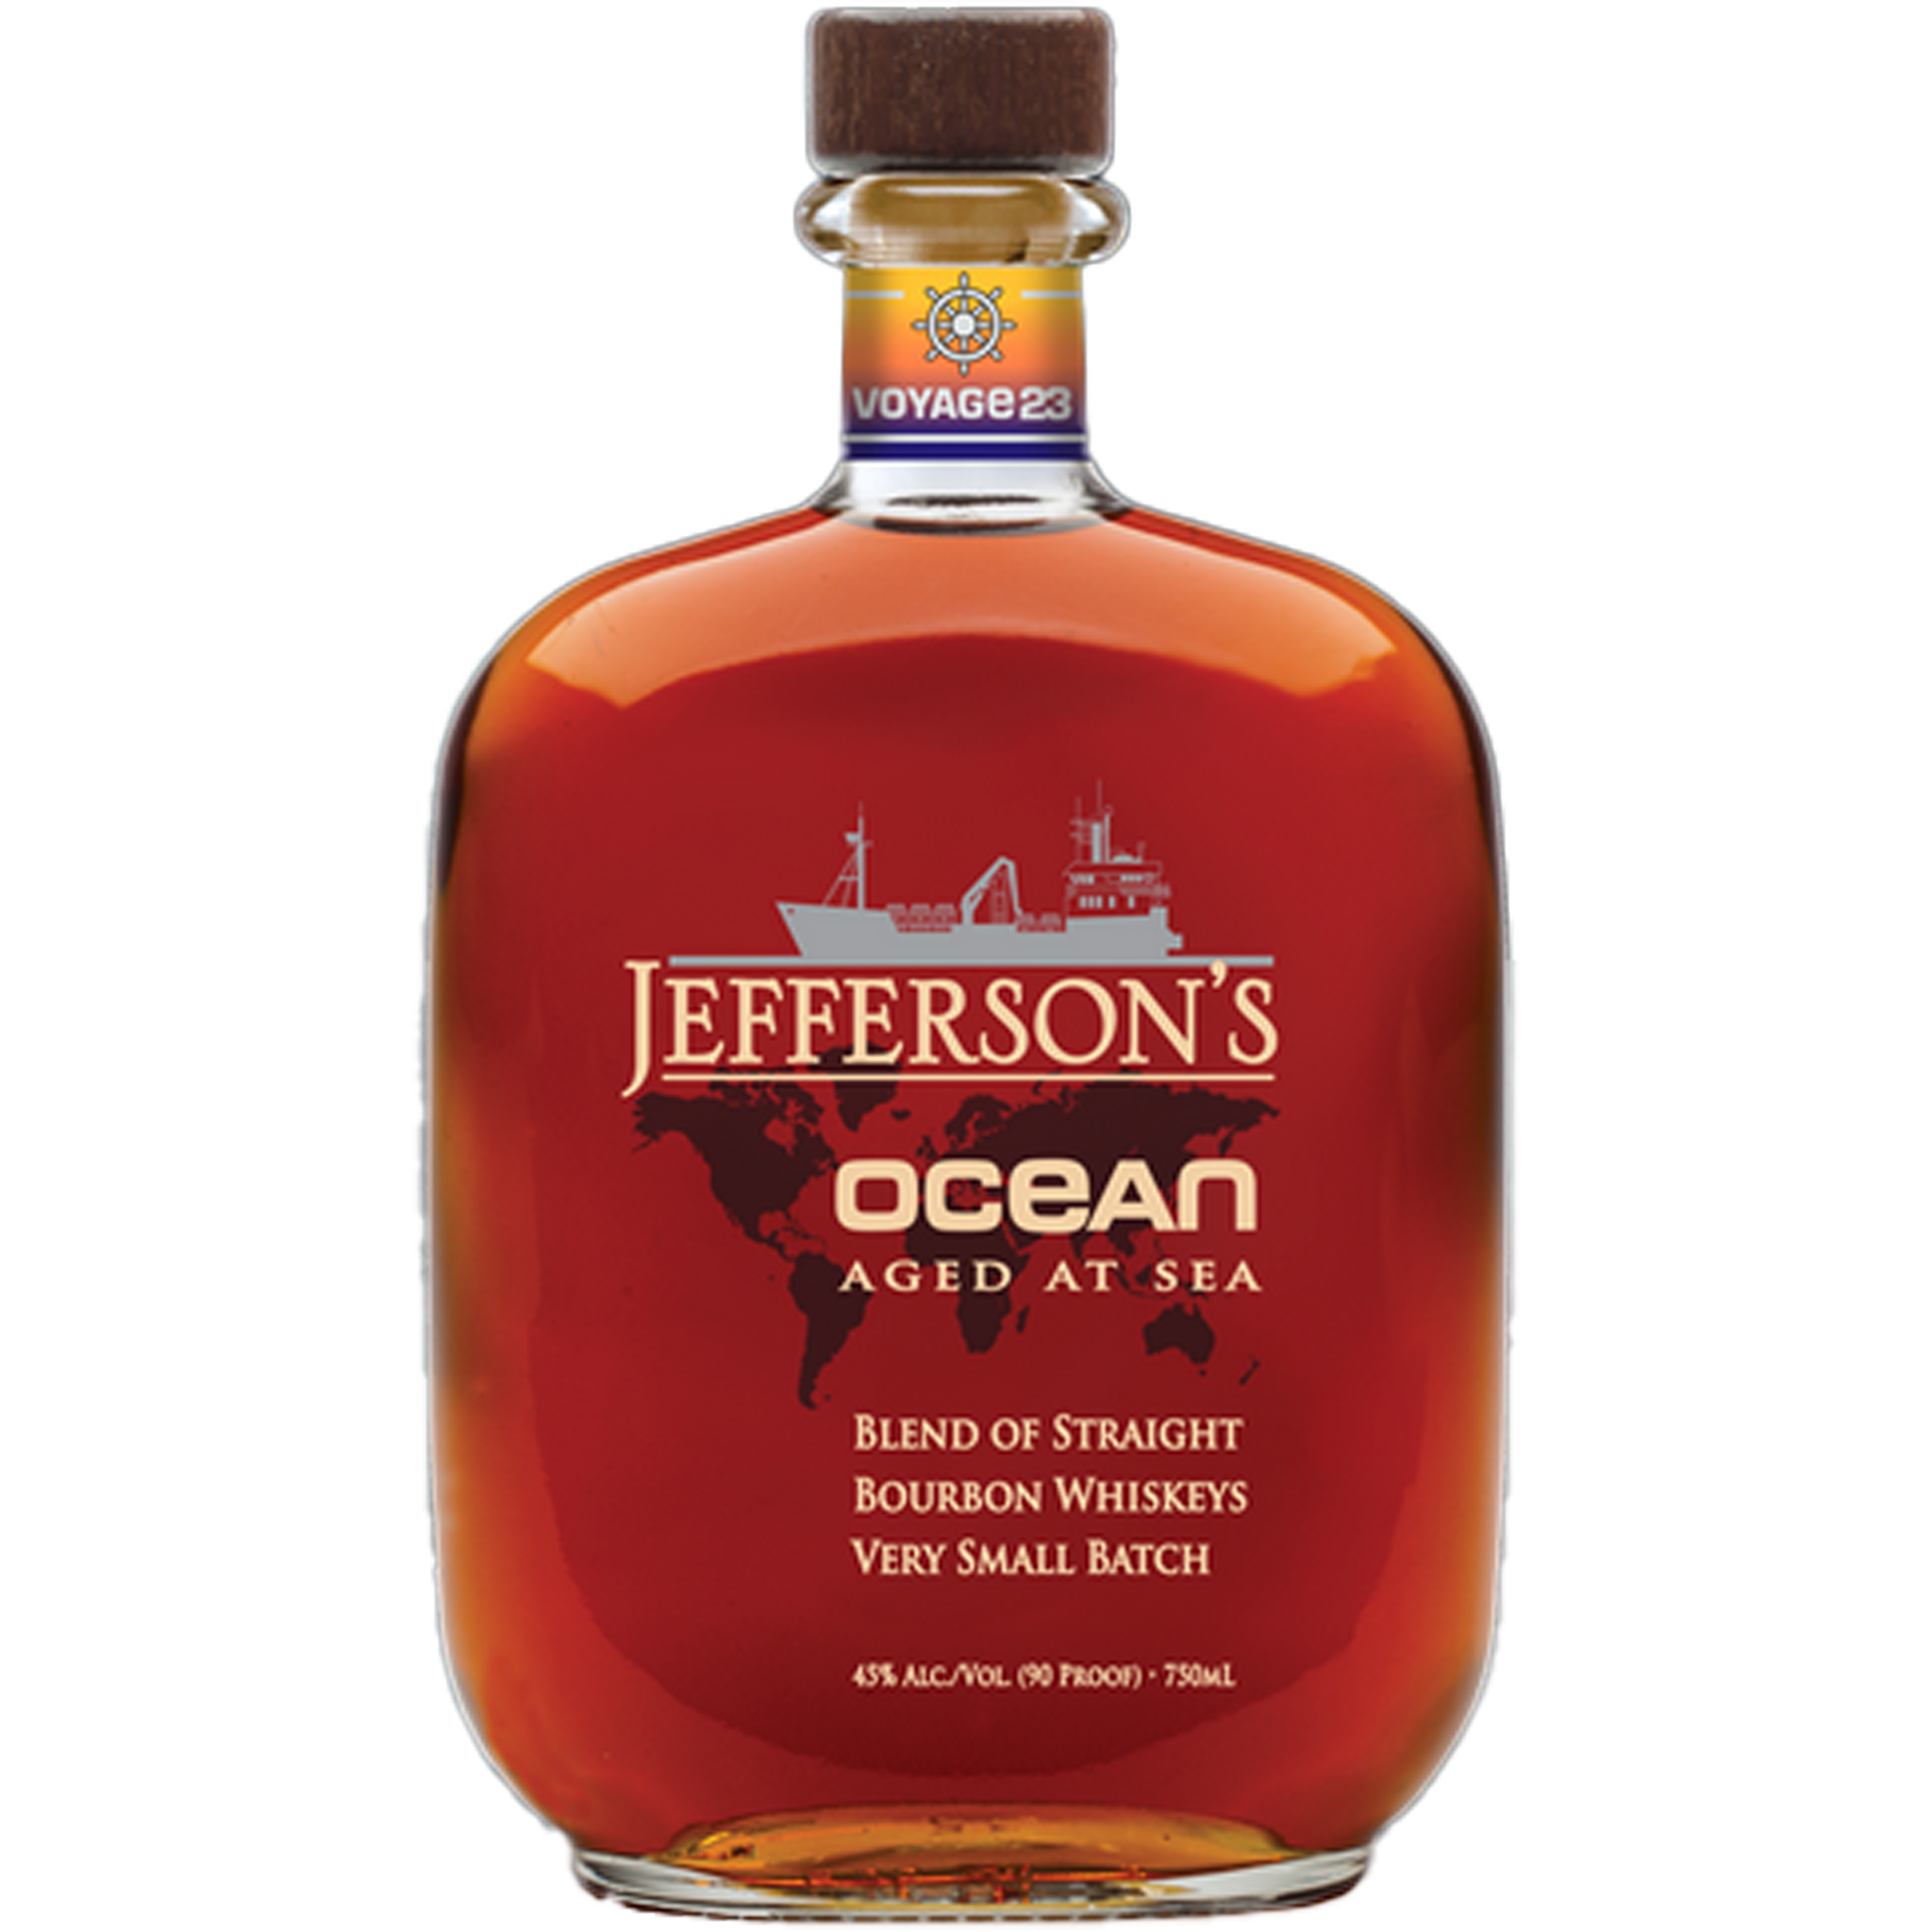 Jefferson's Ocean Aged At Sea Kentucky Straight Bourbon